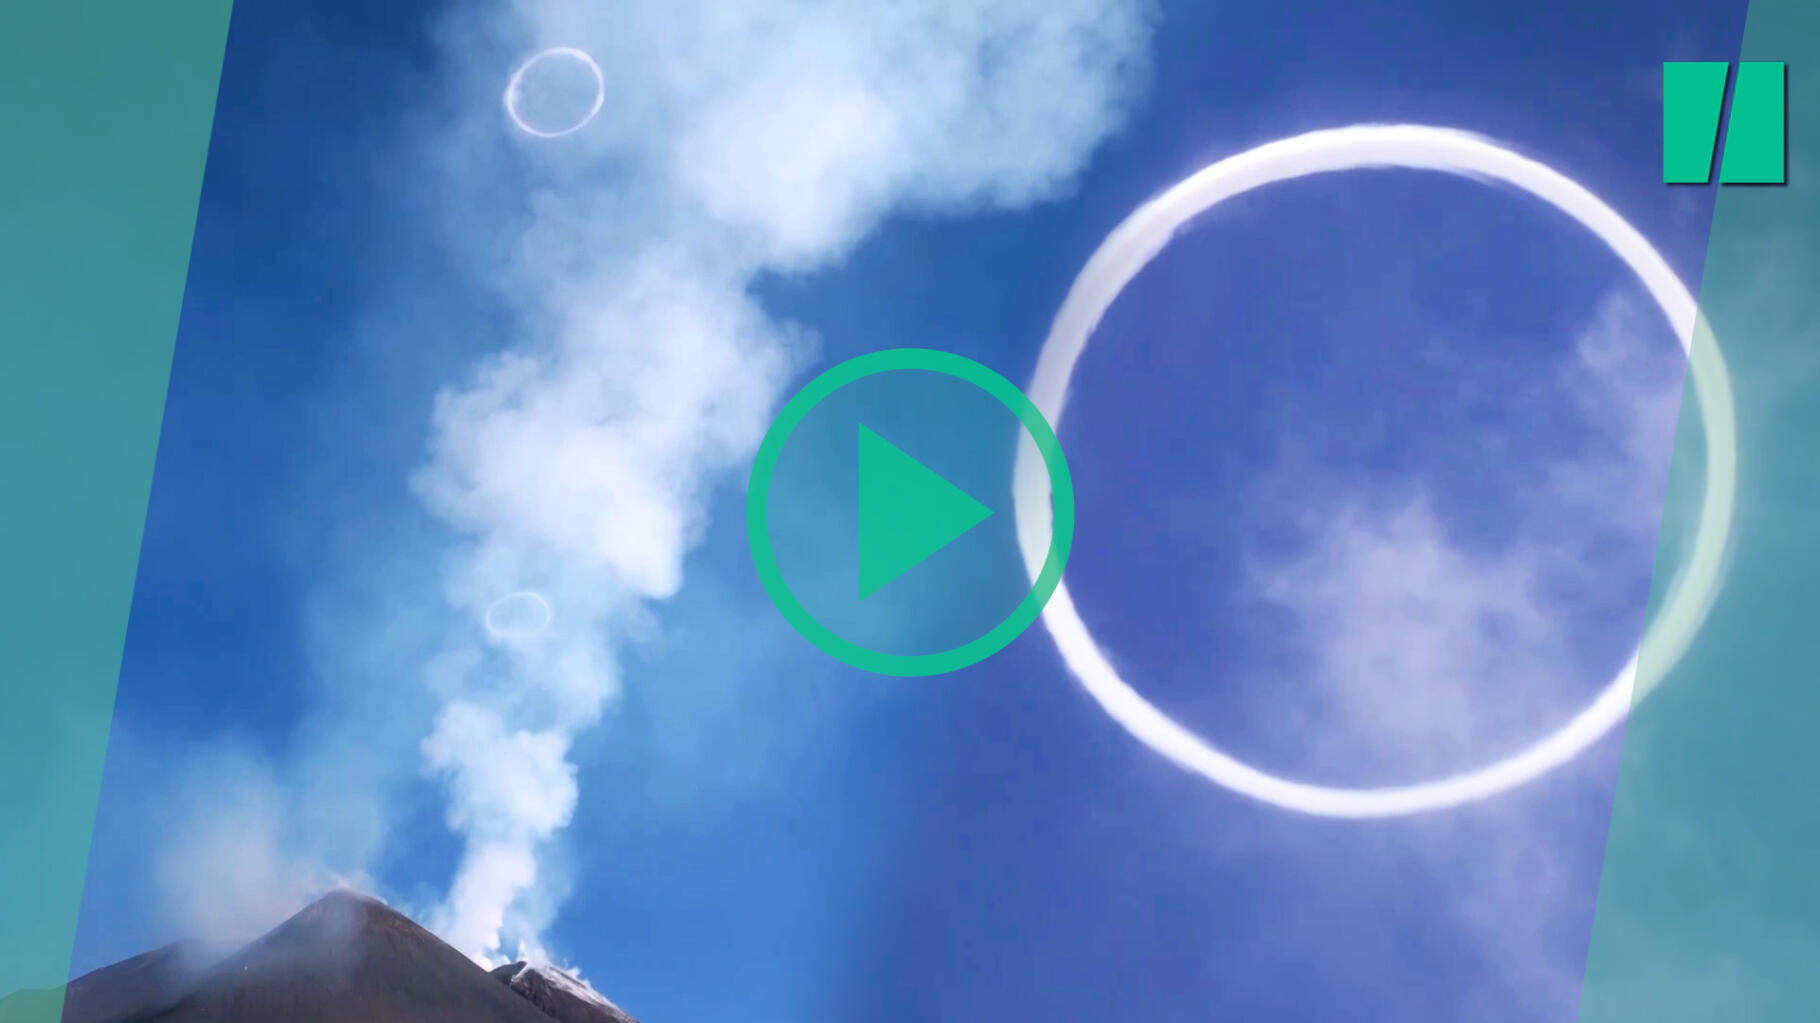 In Italia, l’Etna emette strani anelli di fumo sotto lo sguardo stupito dei turisti